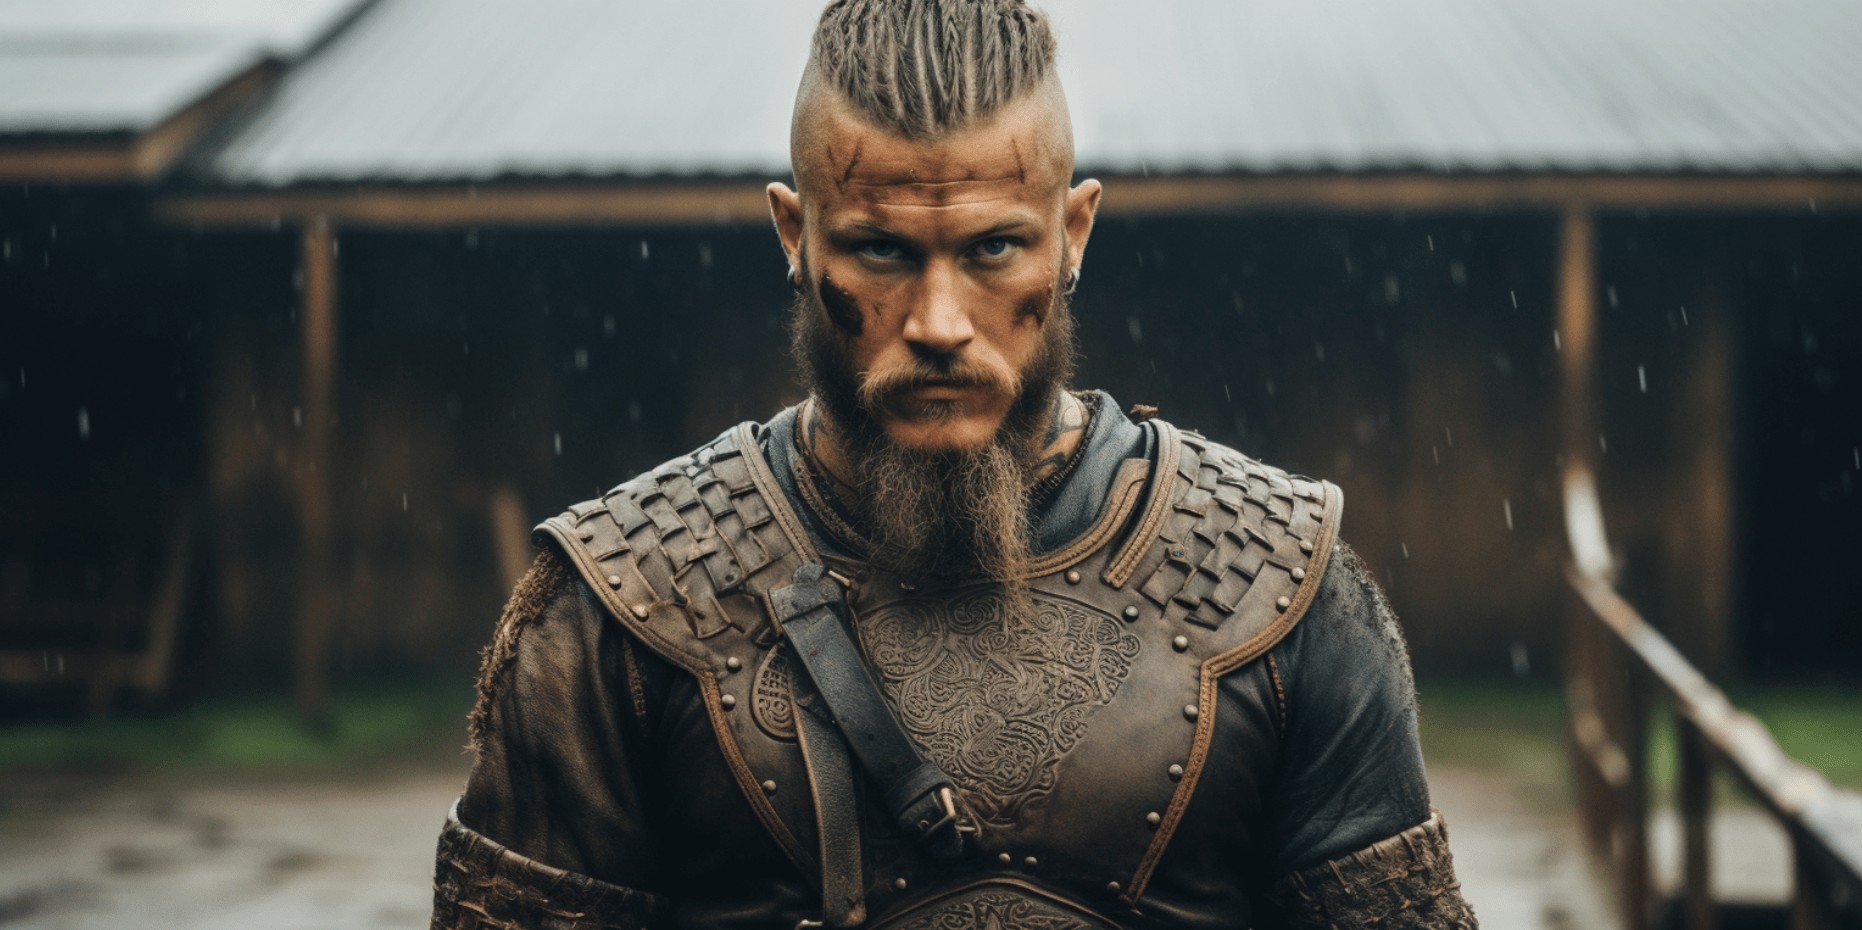 Ragnar-Lodbrok-History.jpg